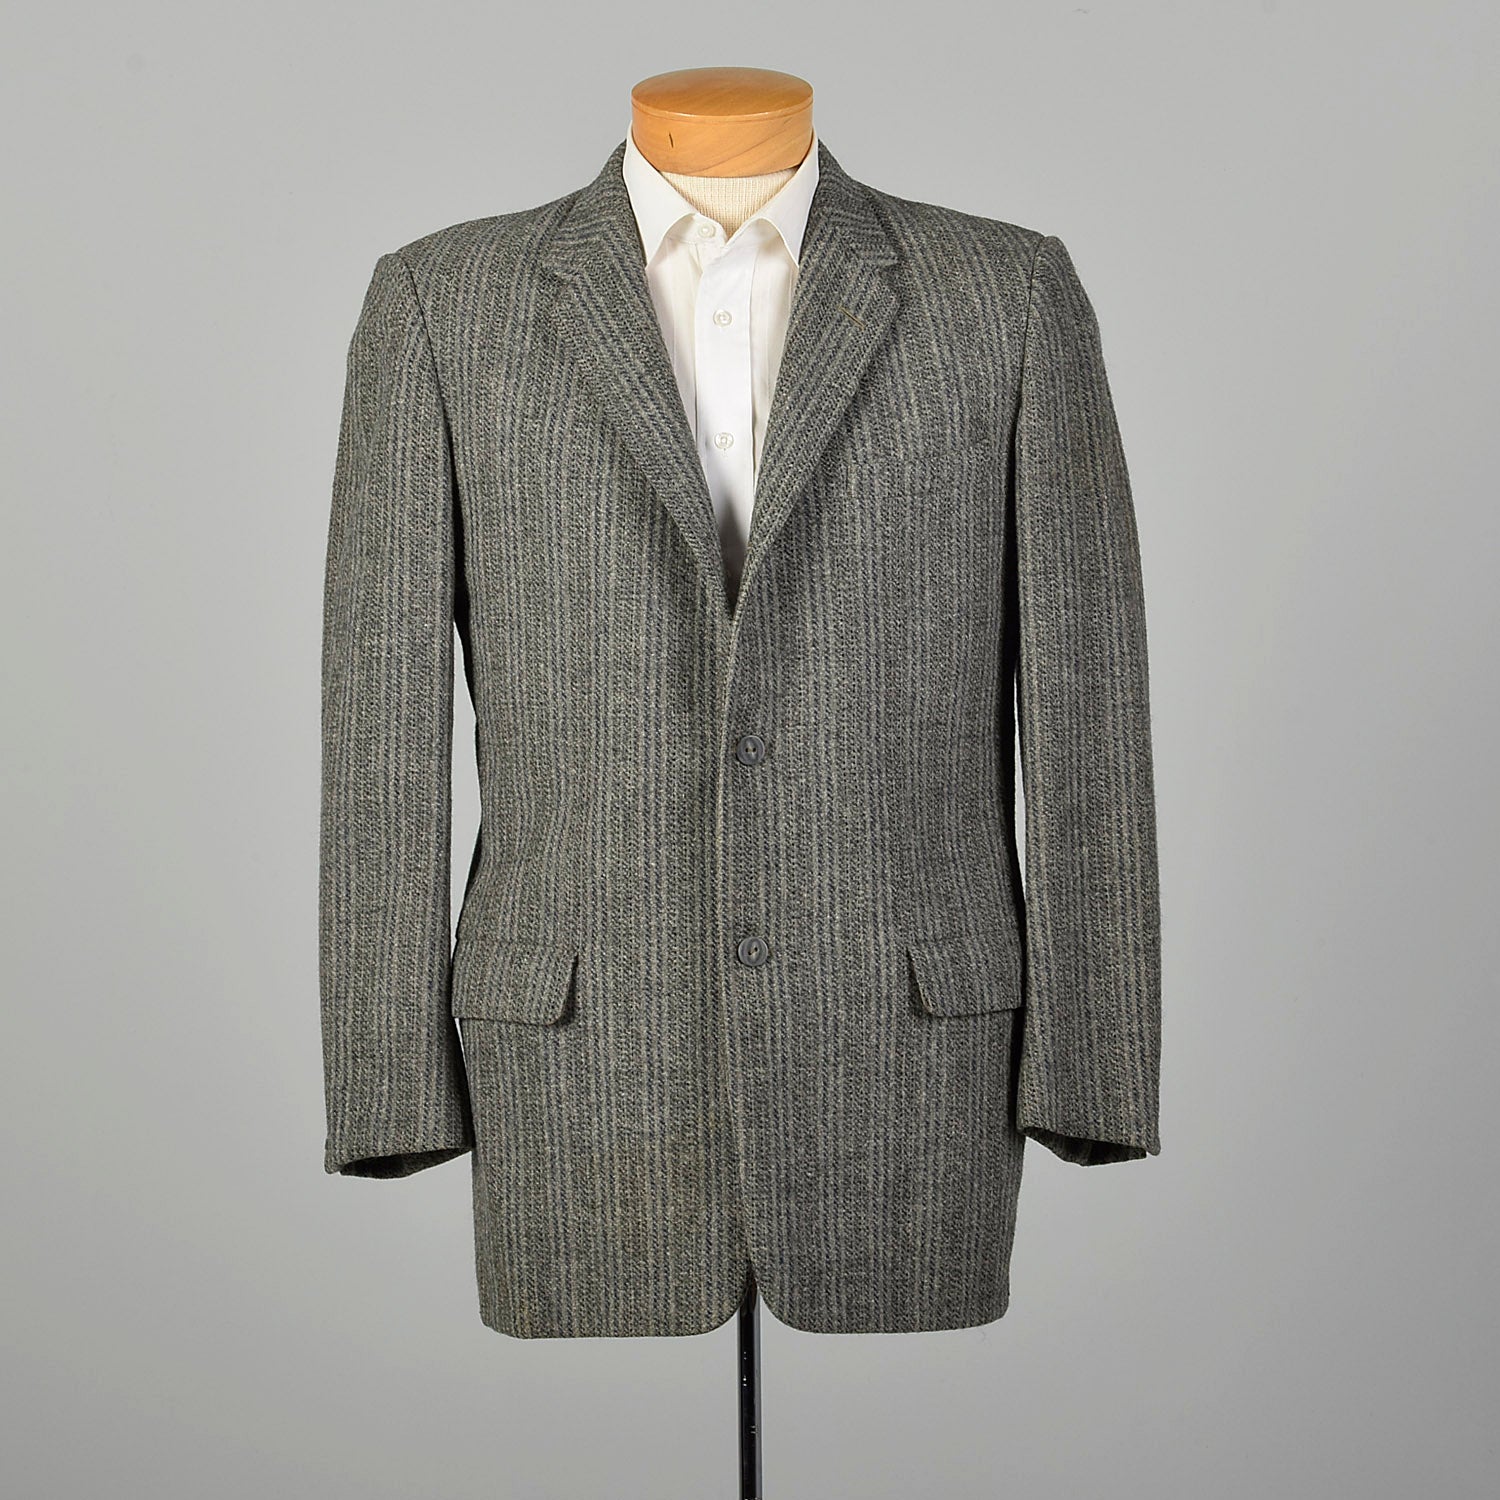 1950s Mens Wool Tweed Jacket Gray Stripe